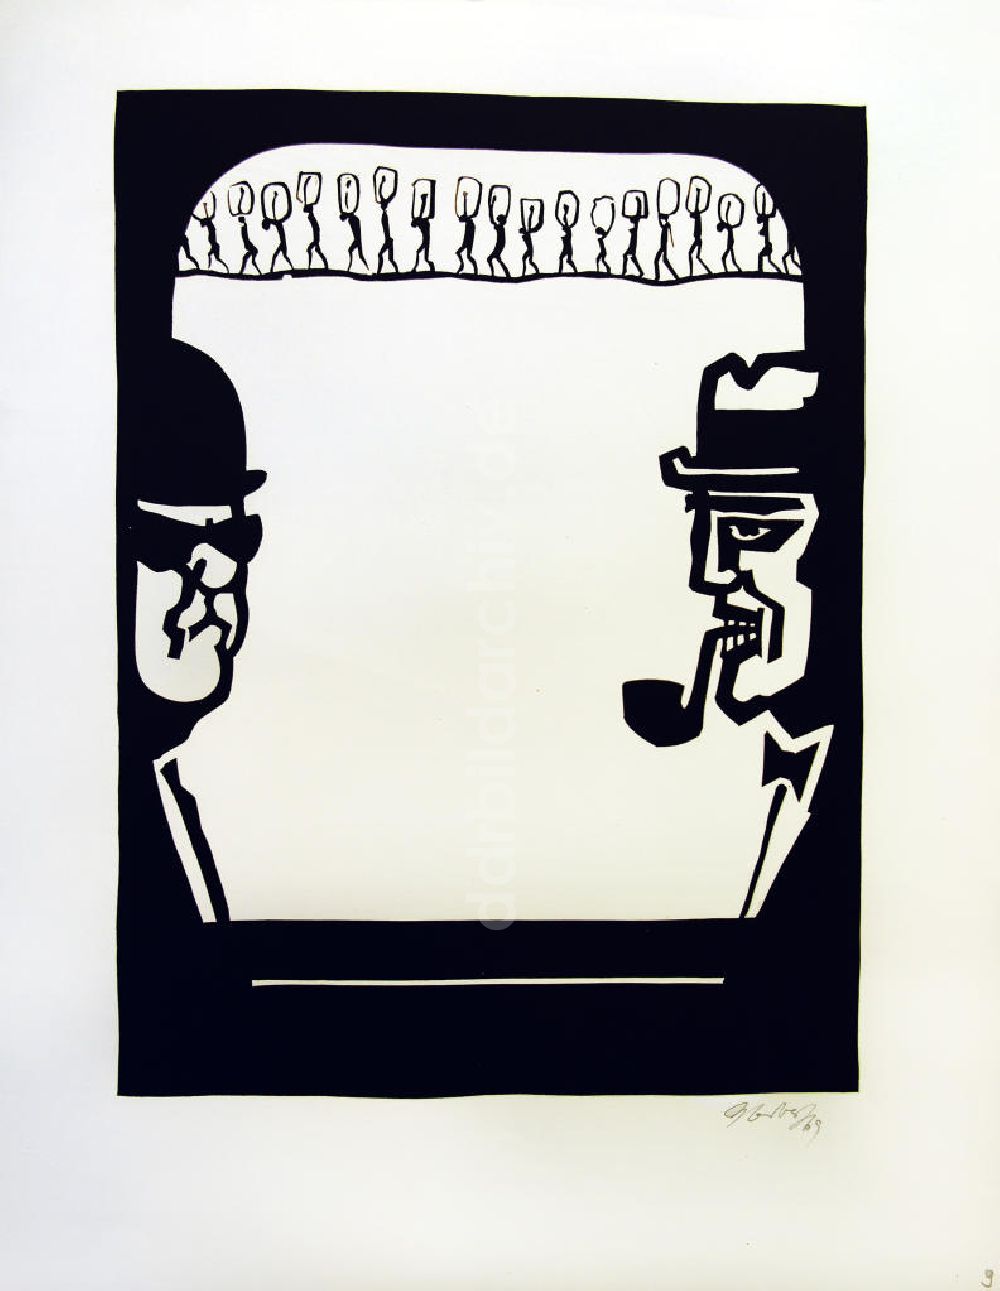 Berlin: Grafik von Herbert Sandberg Motiv 10 aus dem Zyklus Bilder zum Kommunistischen Manifest aus dem Jahr 1969